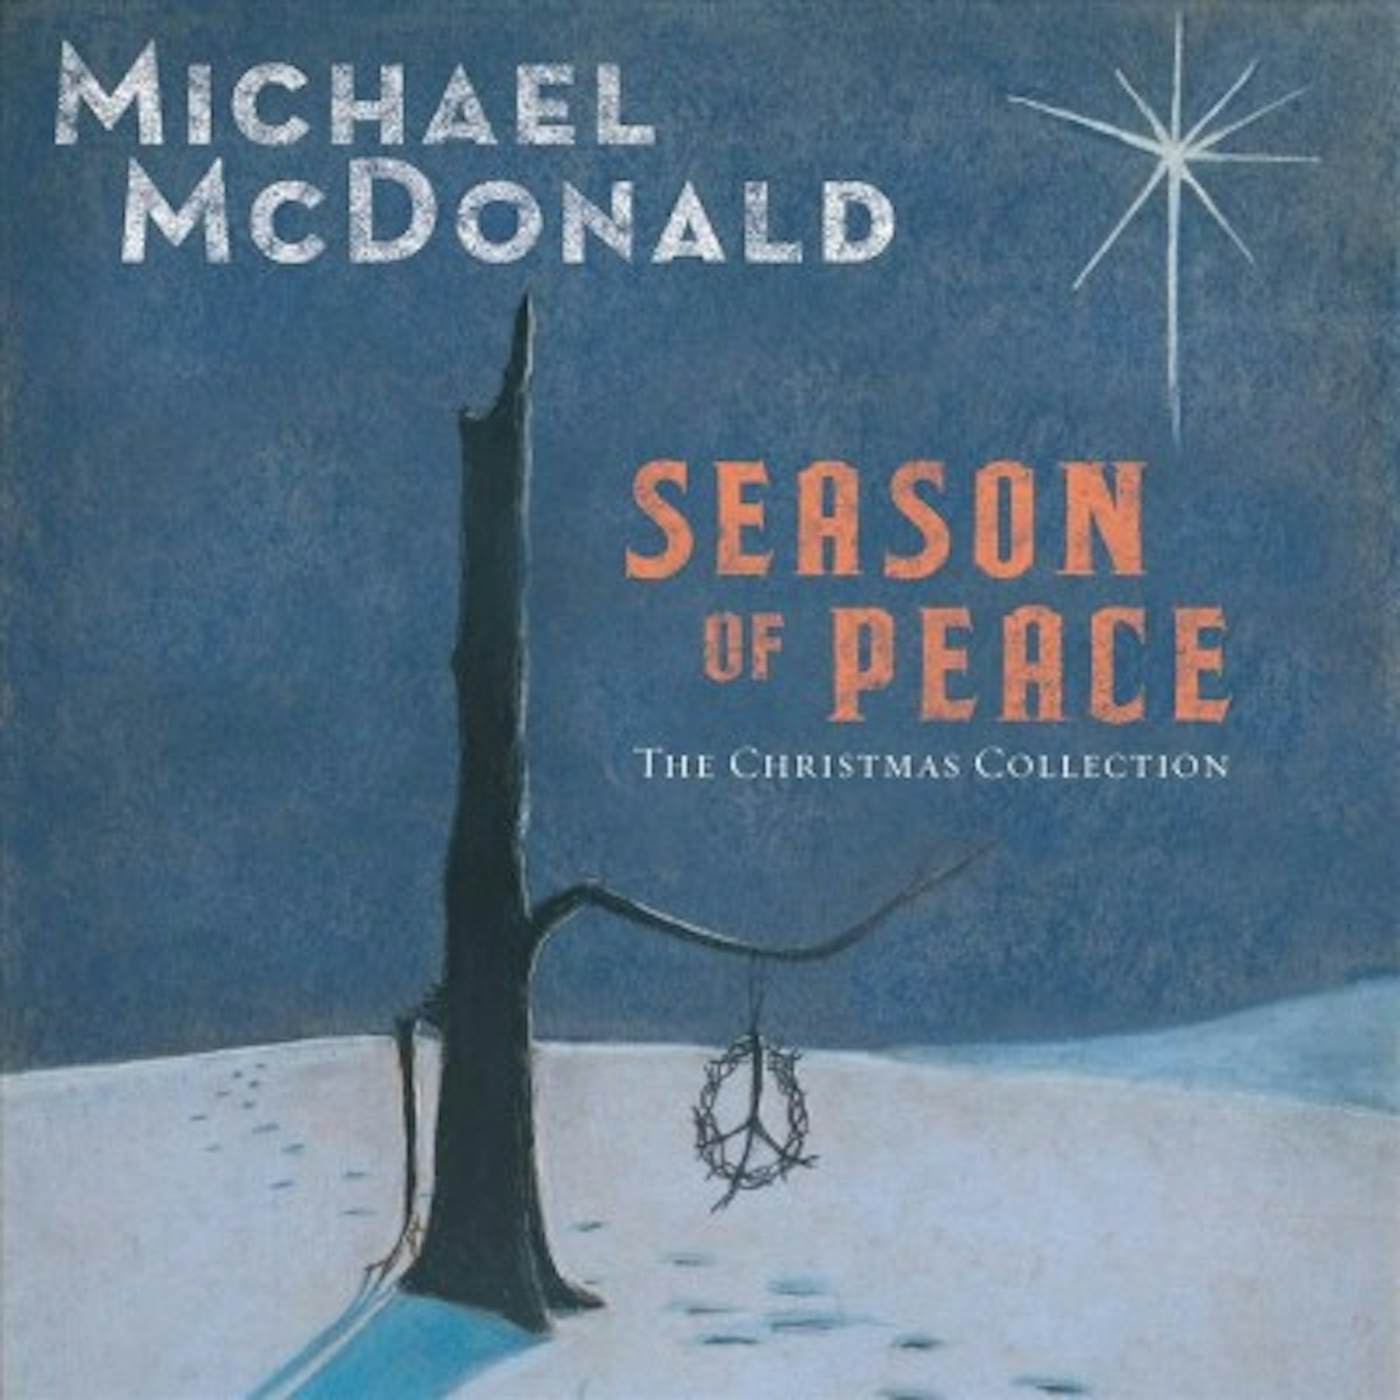 Michael McDonald Season of Peace: The Christmas Collection CD